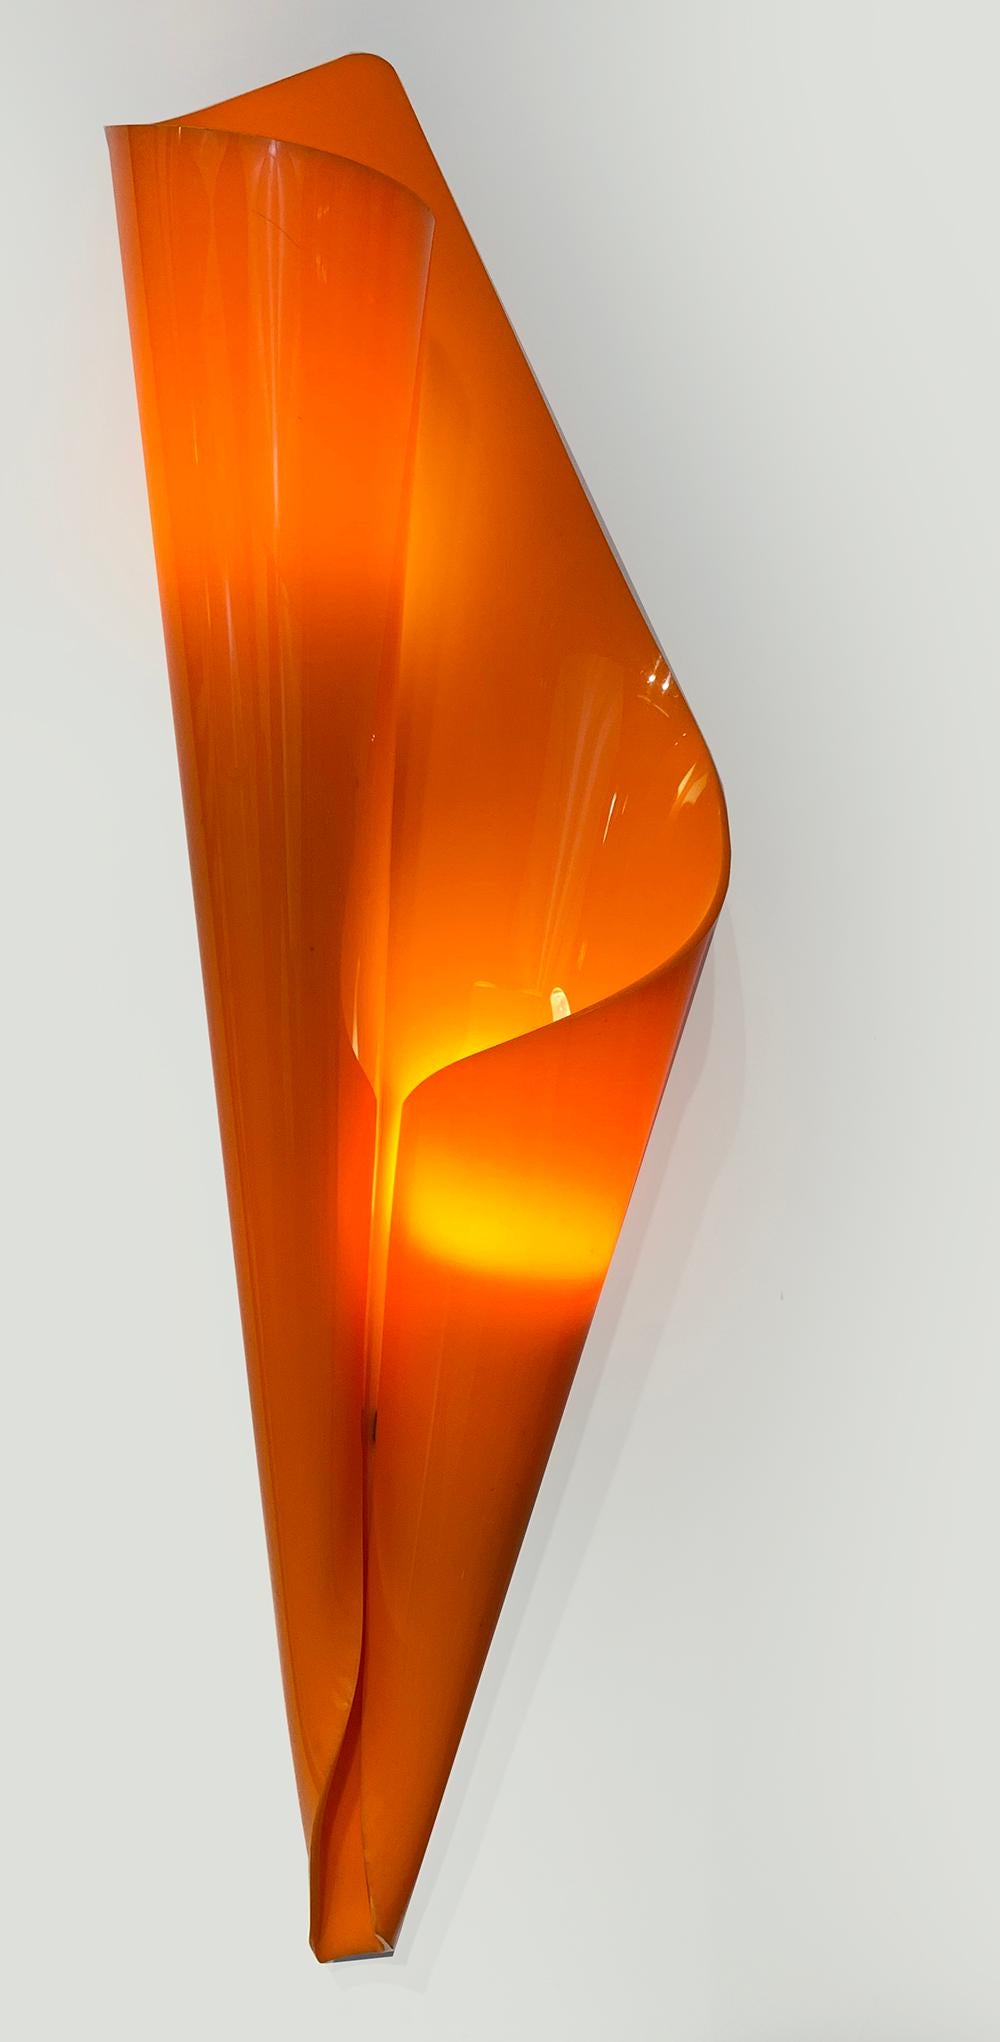 Extrêmement rare, paire d'appliques sculpturales en Lucite, de style moderne du milieu du siècle, colorées en orange et jaune. 
Conçu par Hanns Hoffmann-Lederer dans les années 1950 pour Heinz Hecht, Darmstadt, Allemagne.
 